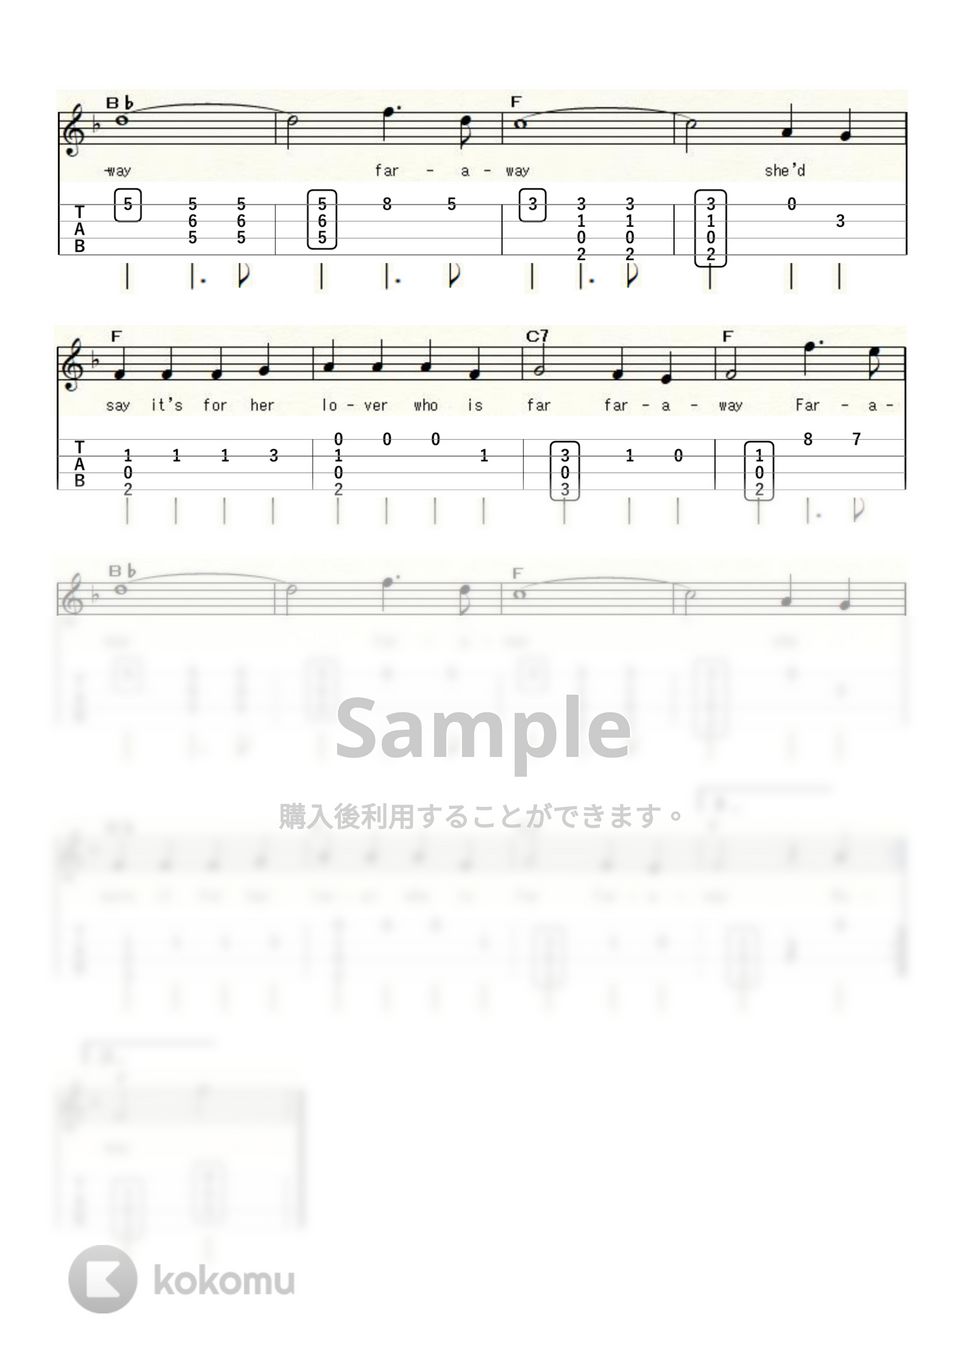 黄色いリボン (ｳｸﾚﾚｿﾛ/High-G・Low-G/初級) by ukulelepapa